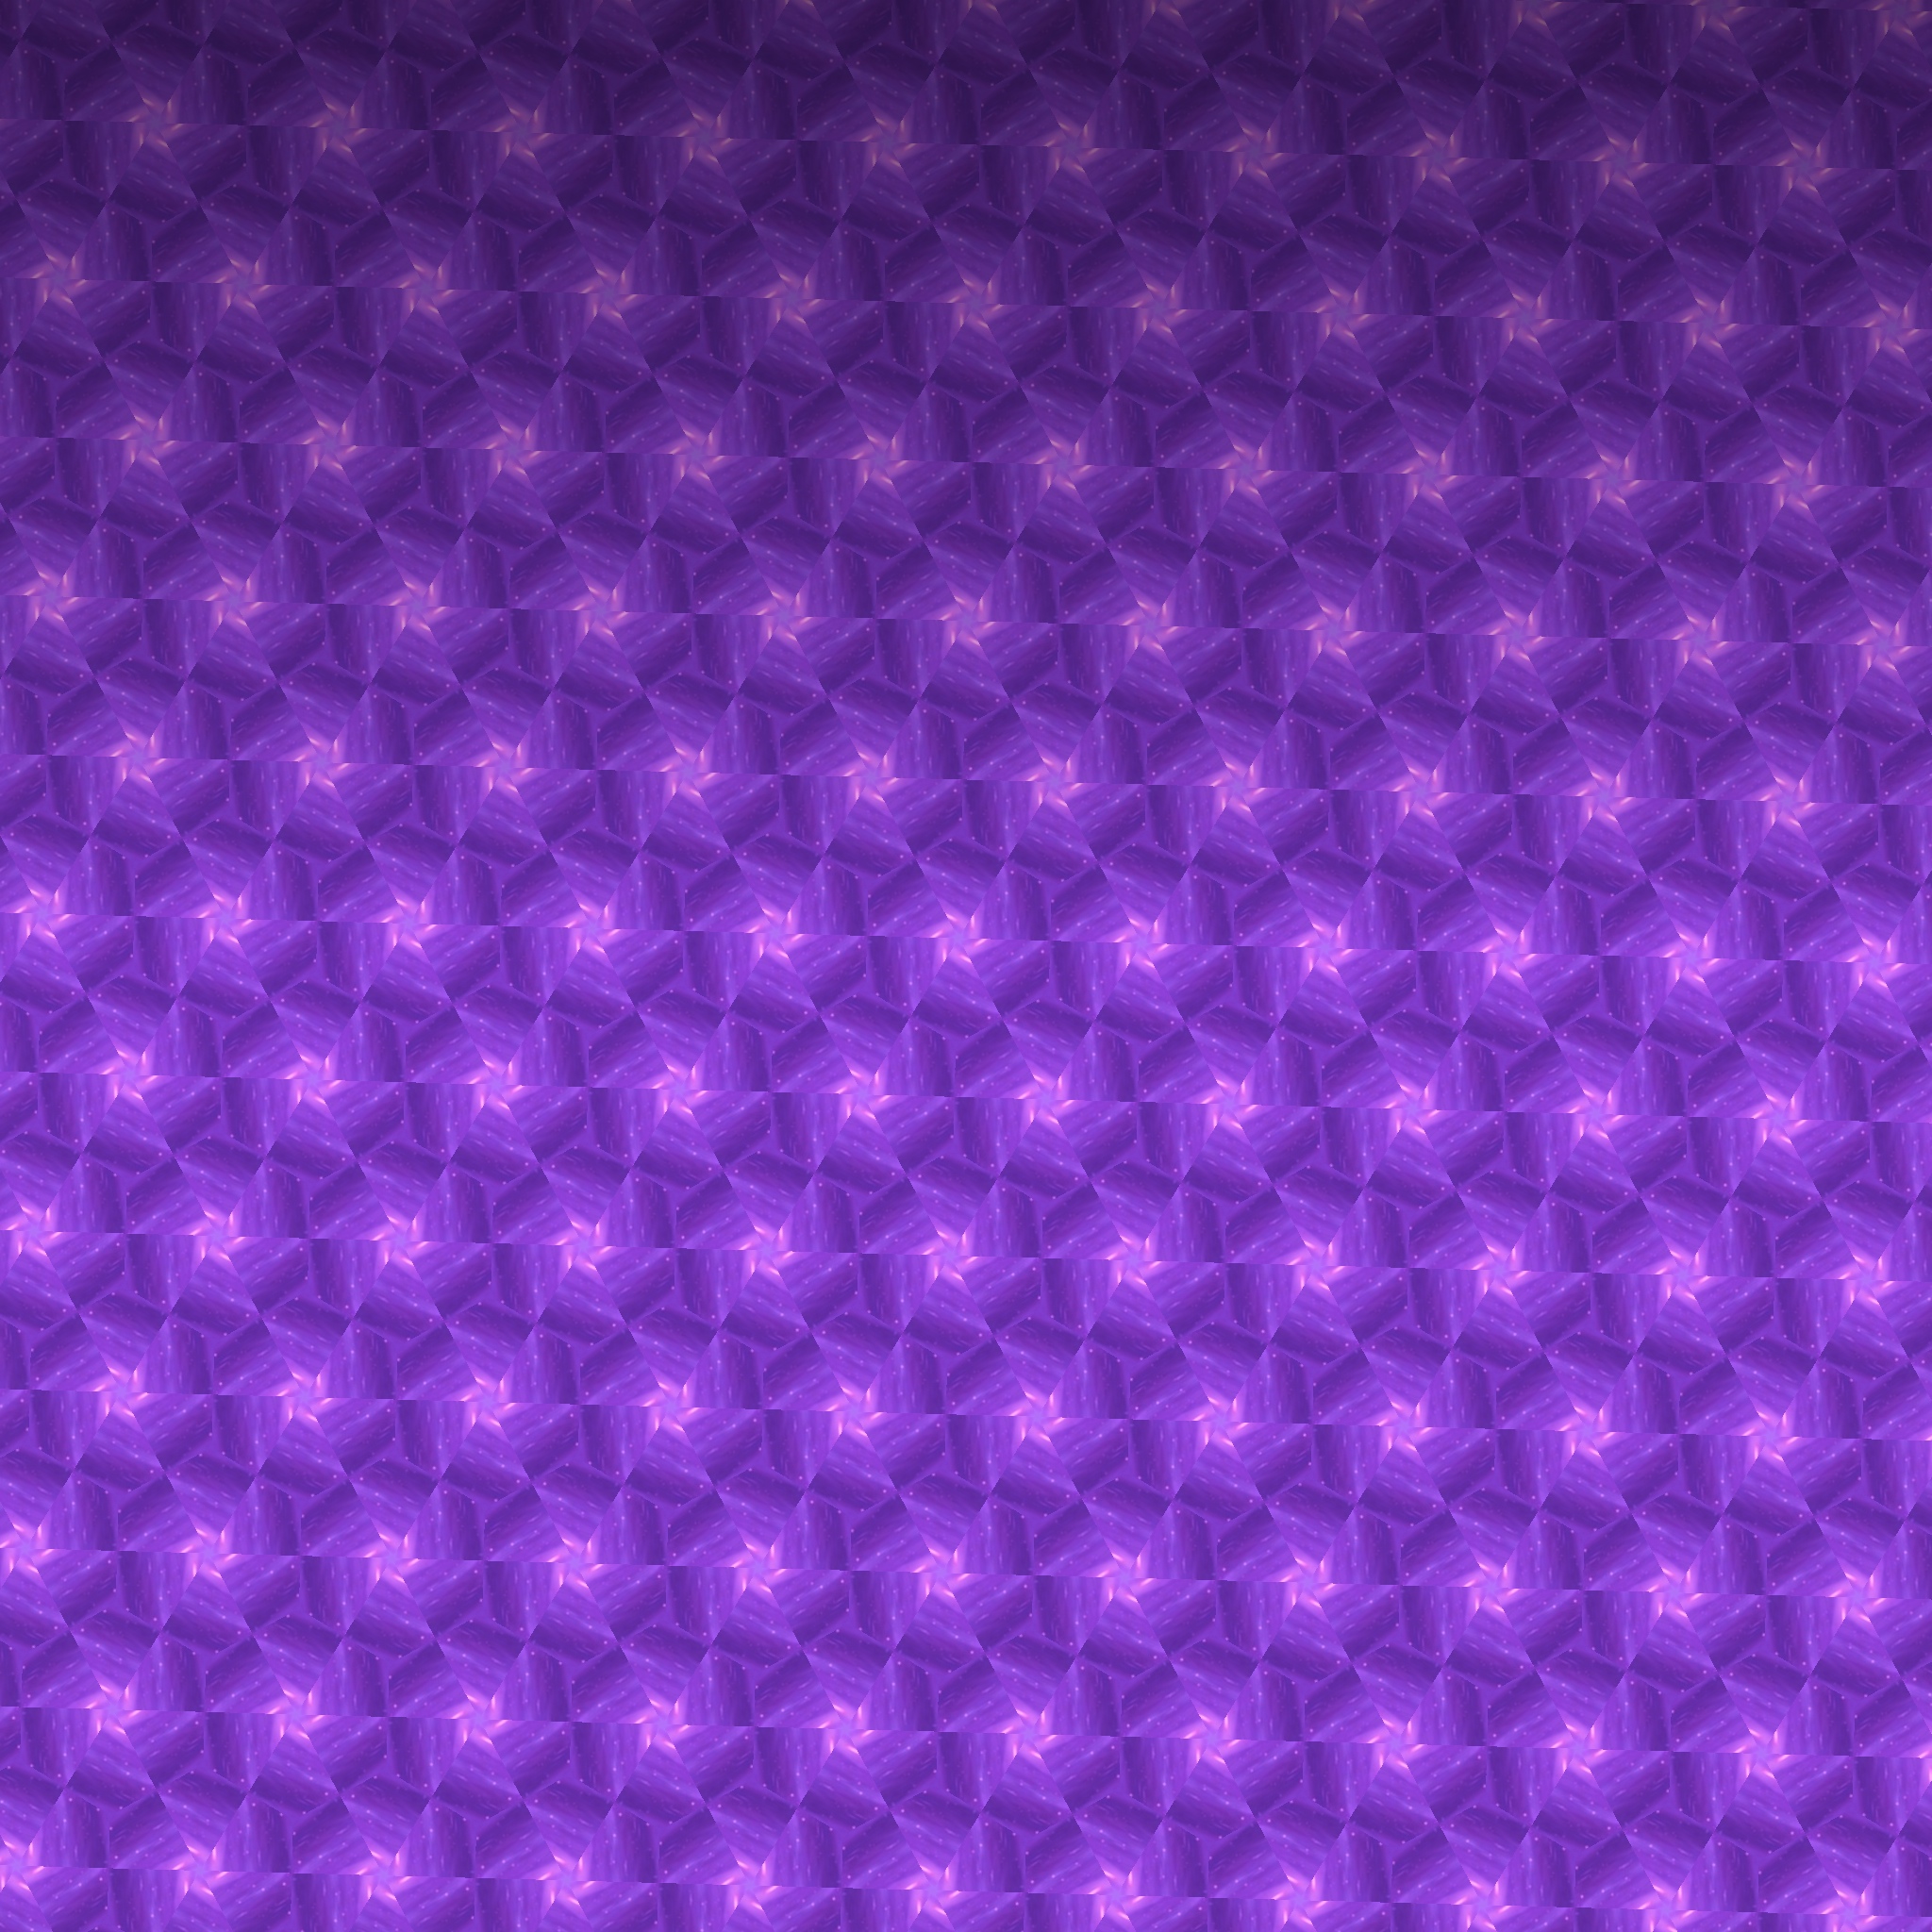 Purple-pattern - Electric Blue - HD Wallpaper 